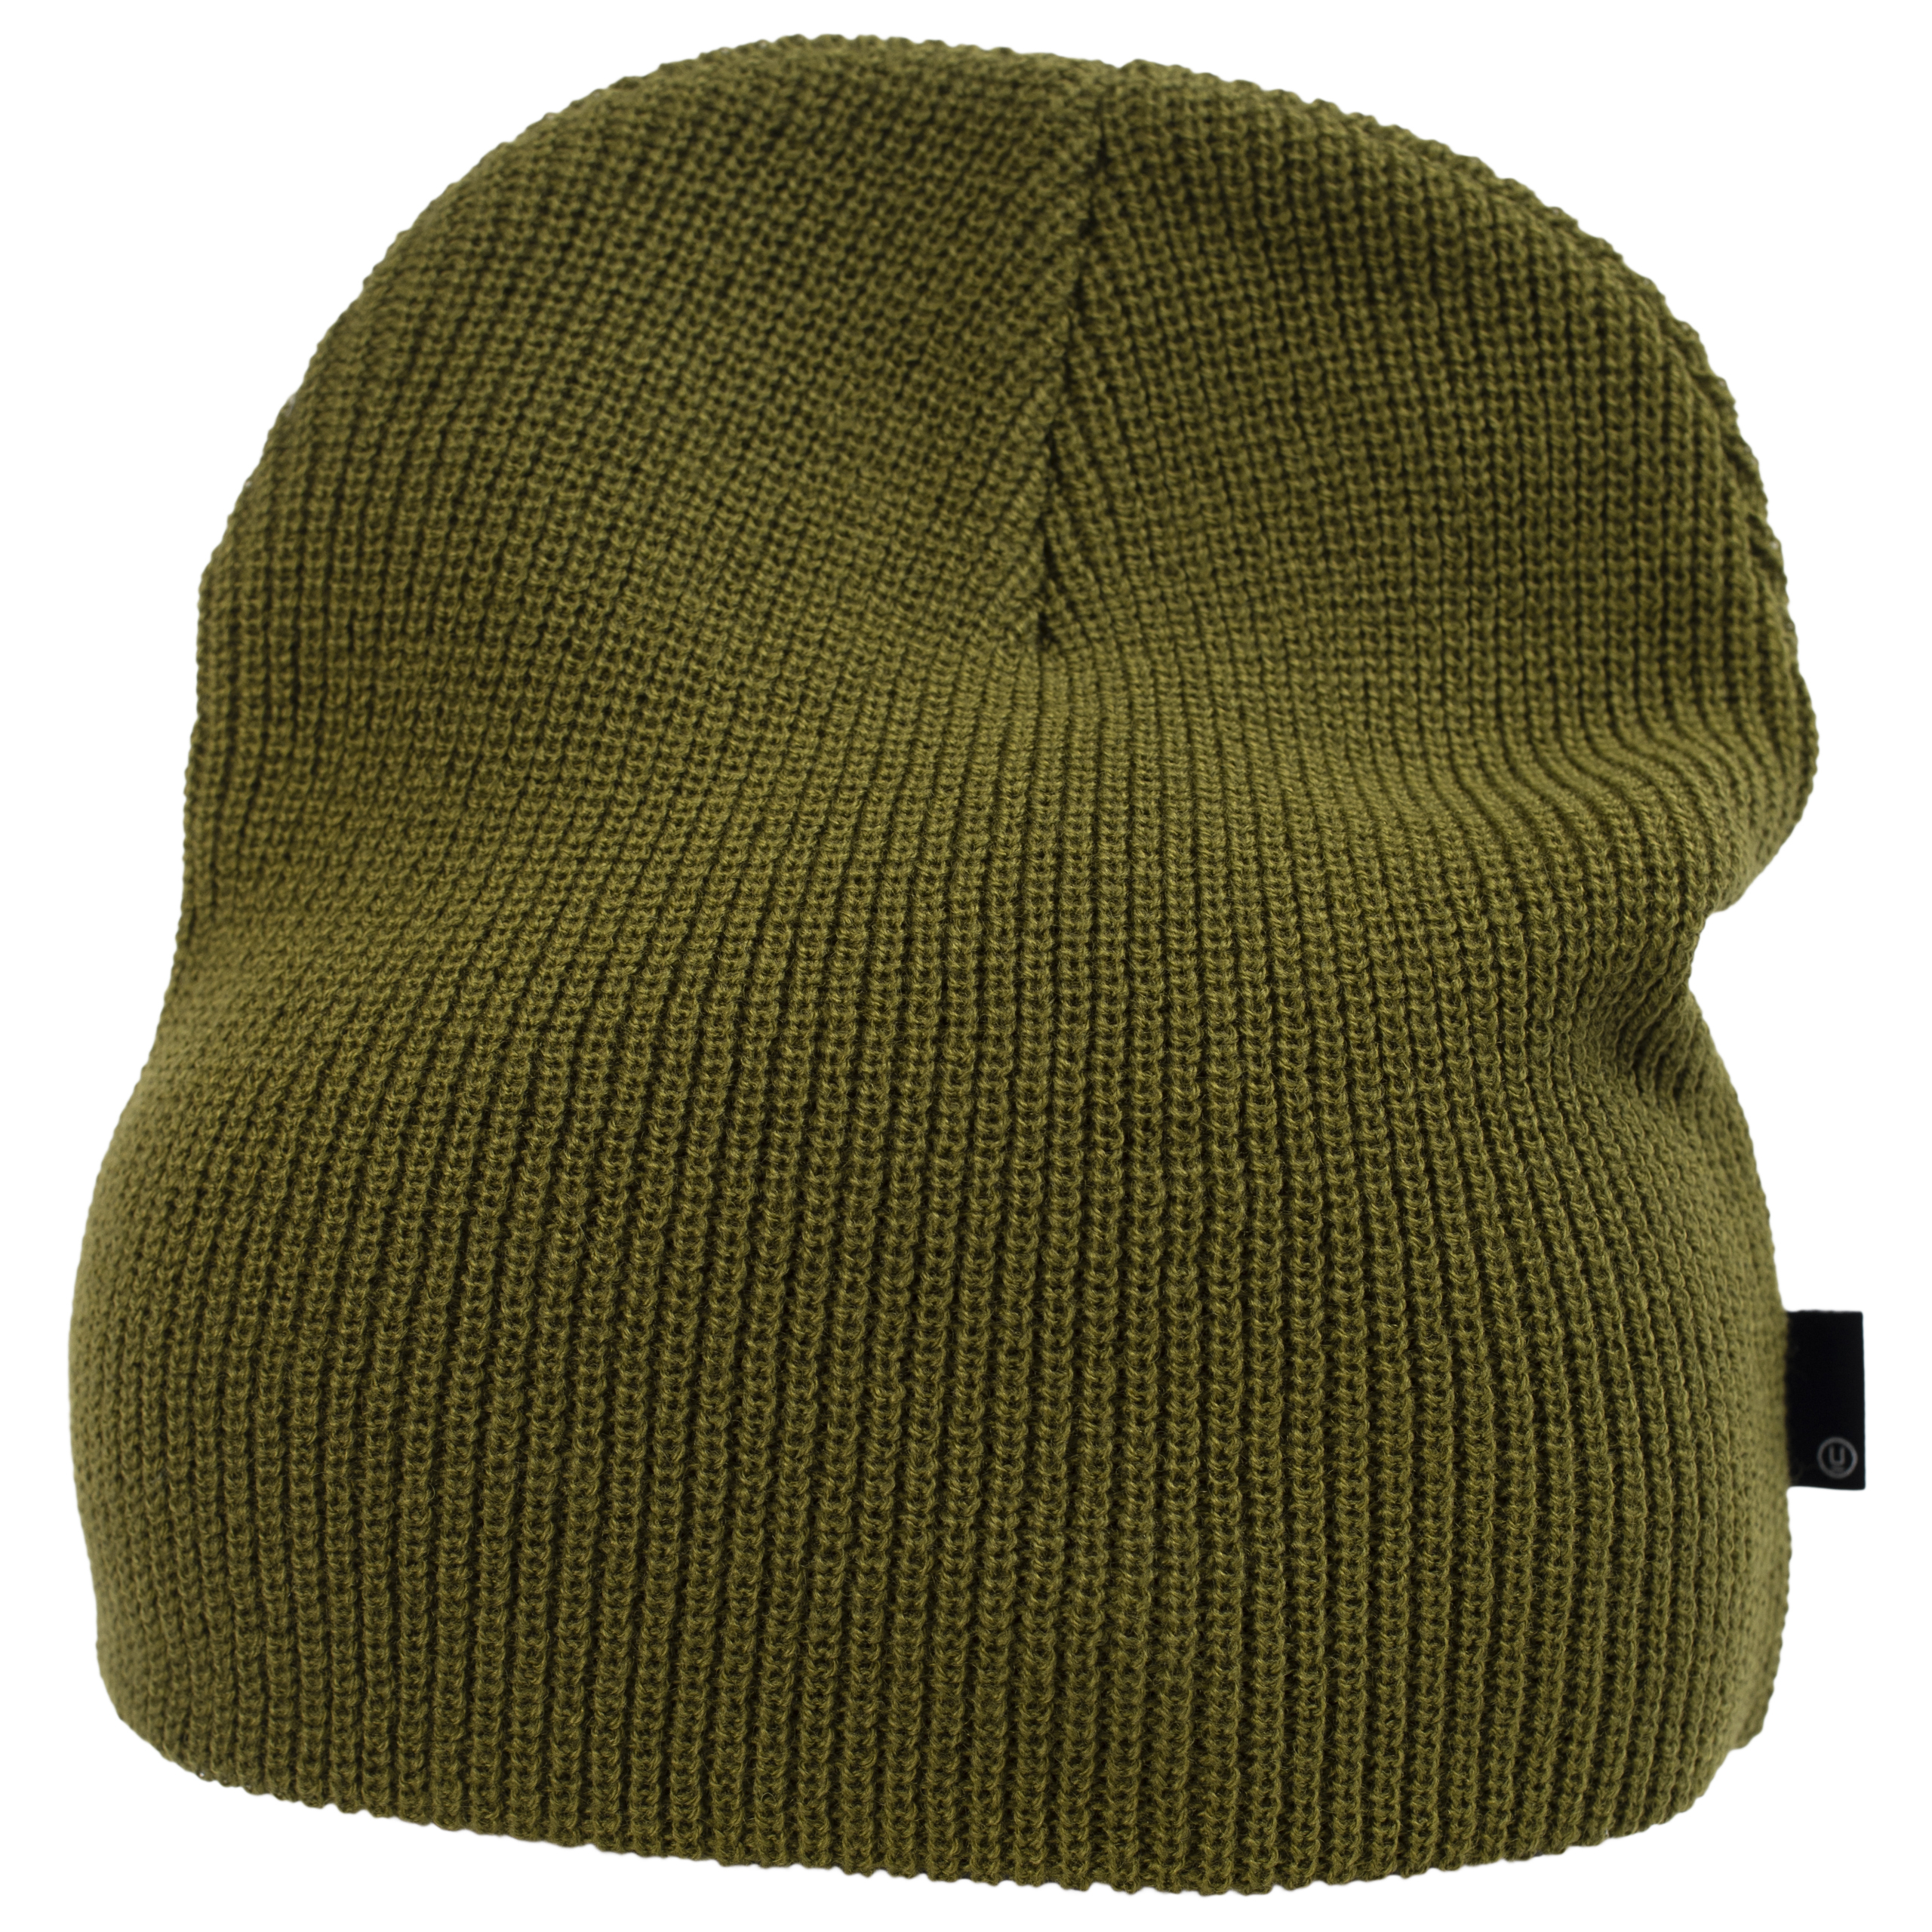 Вязаная шапка цвета хаки Undercover UC2A4H03/khaki, размер One Size UC2A4H03/khaki - фото 1